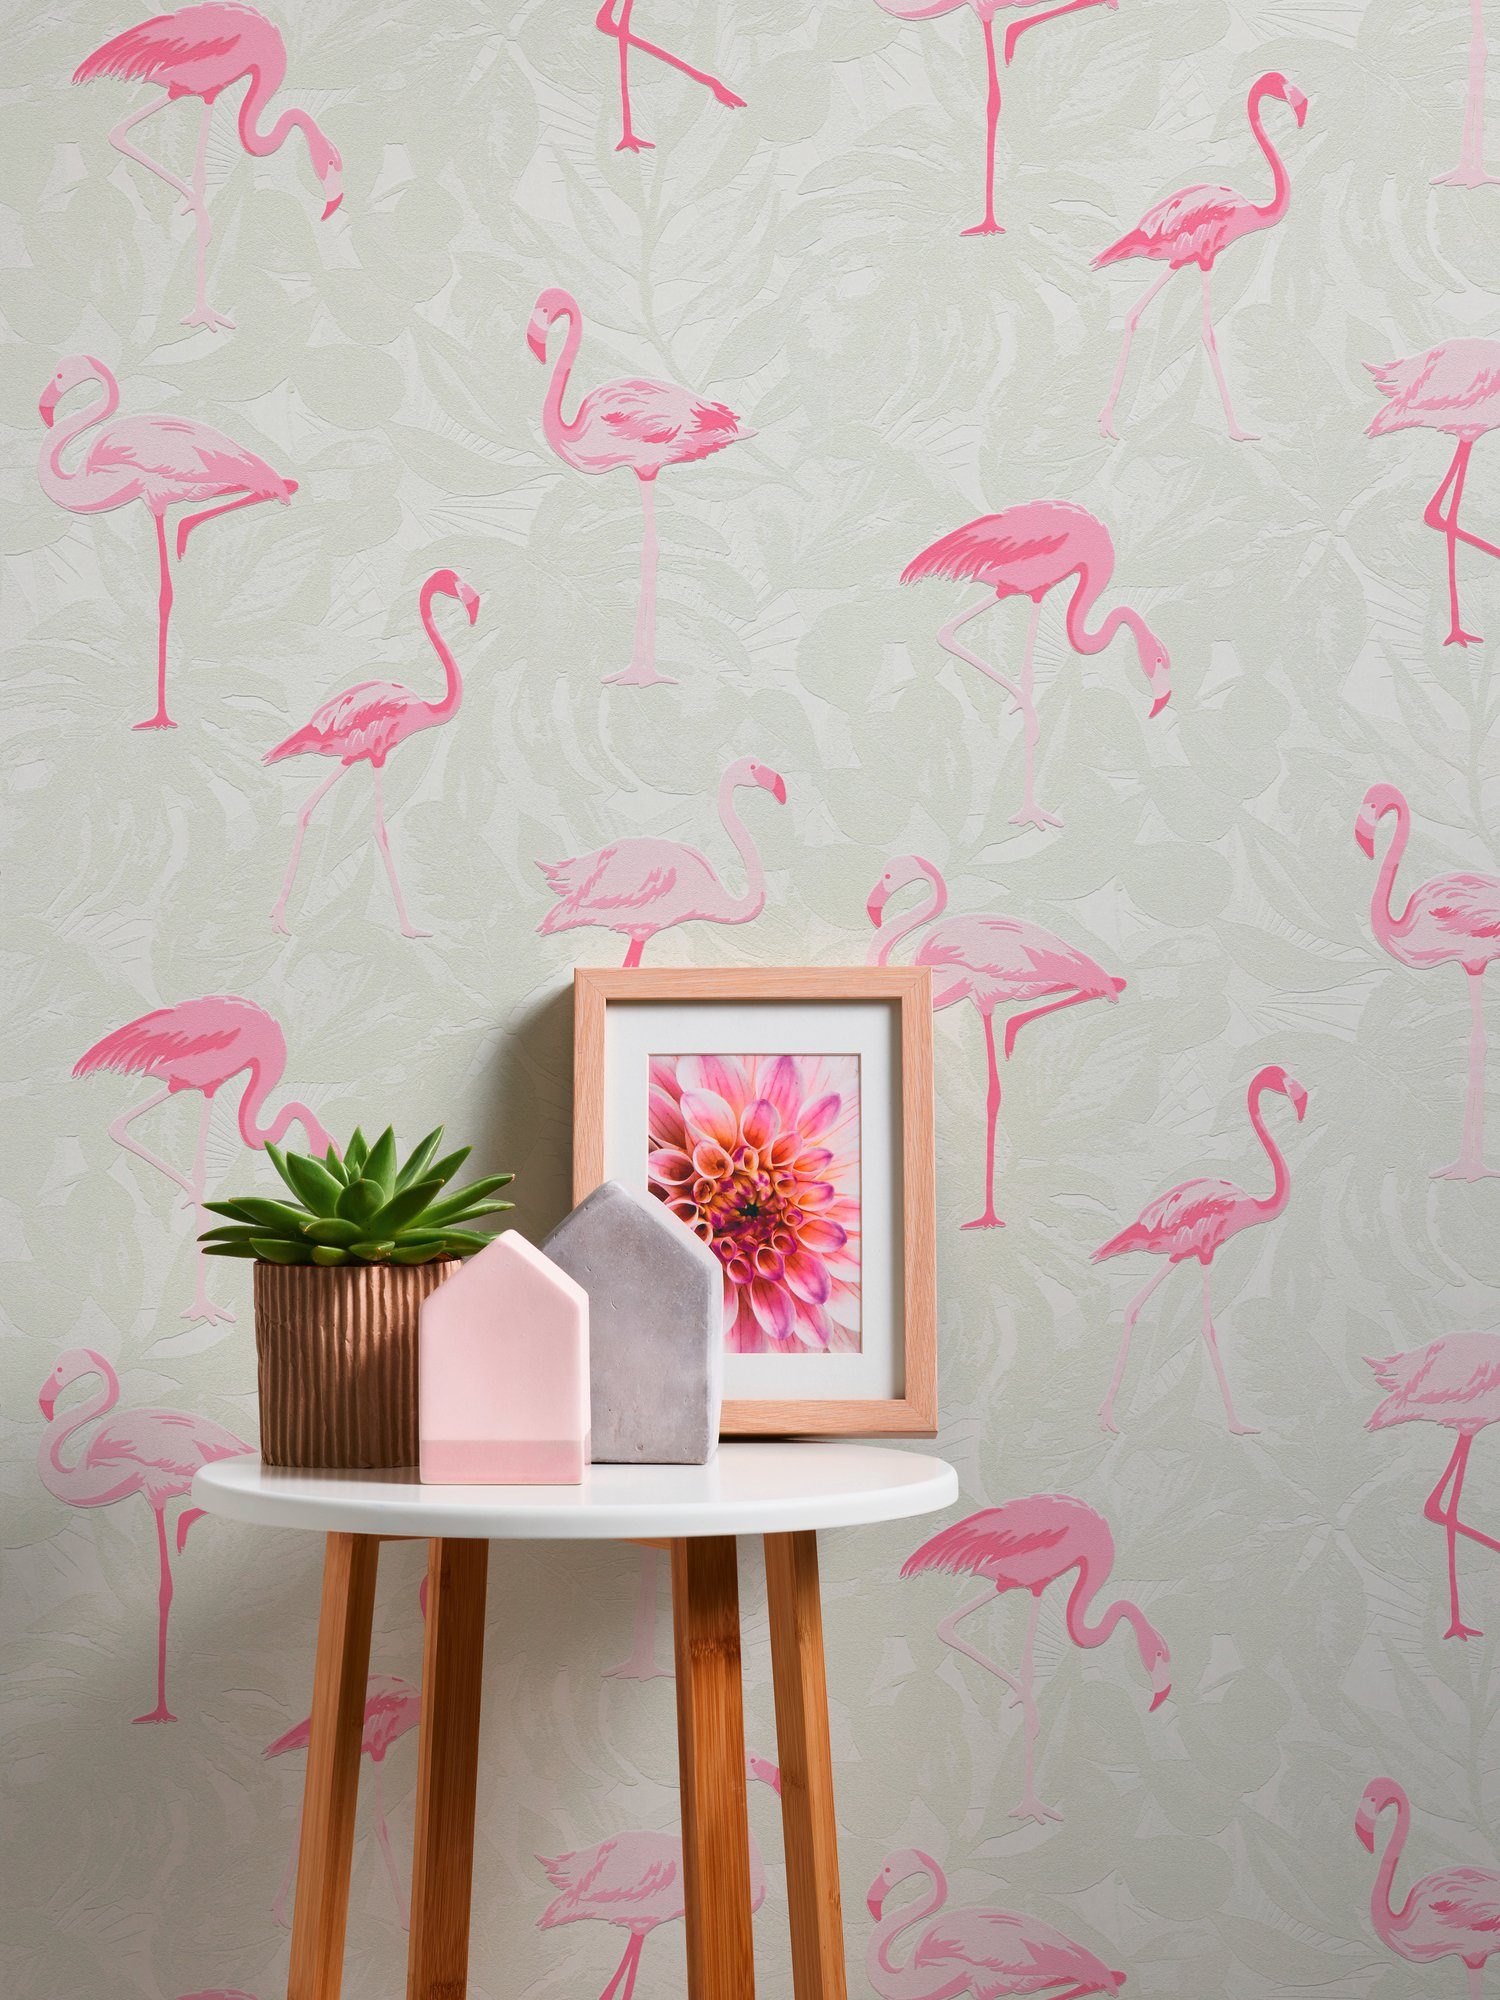 A.S. Création Vliestapete Boys & Flamingos, bunt/weiß strukturiert, Tiere Tapete Girls 6 mit floral